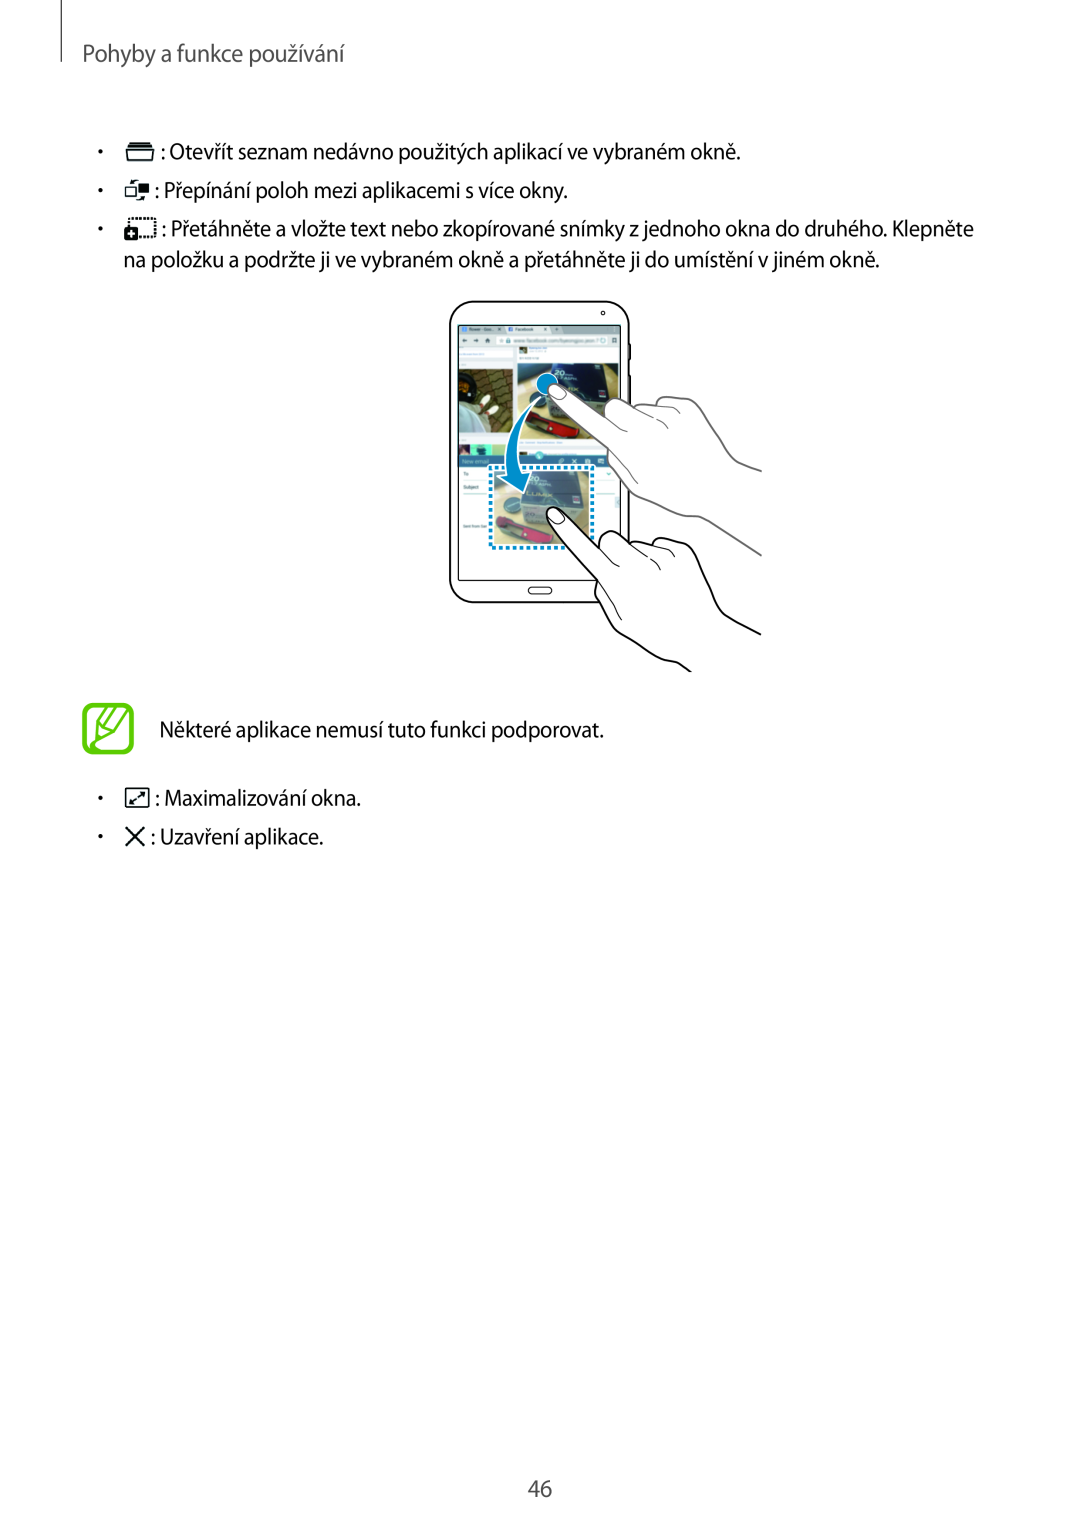 Samsung SM-T700NZWAATO manual Pohyby a funkce používání, Otevřít seznam nedávno použitých aplikací ve vybraném okně 